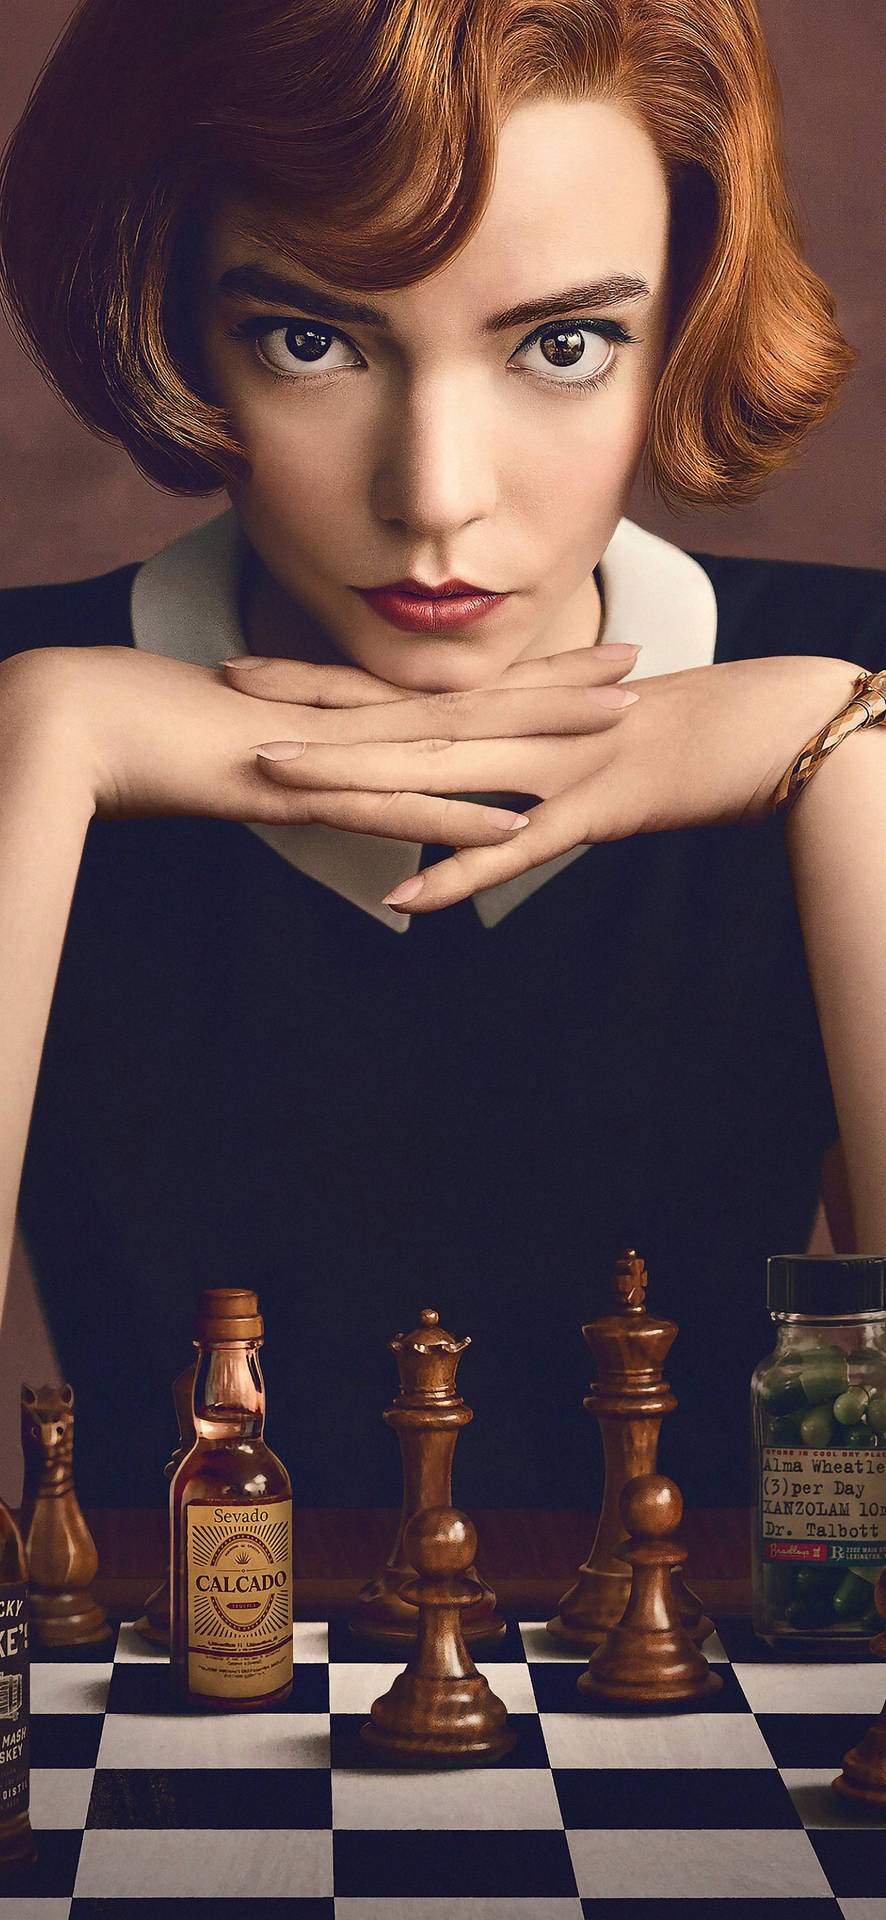 The Queen's Gambit Beth Teaser Cover Wallpaper